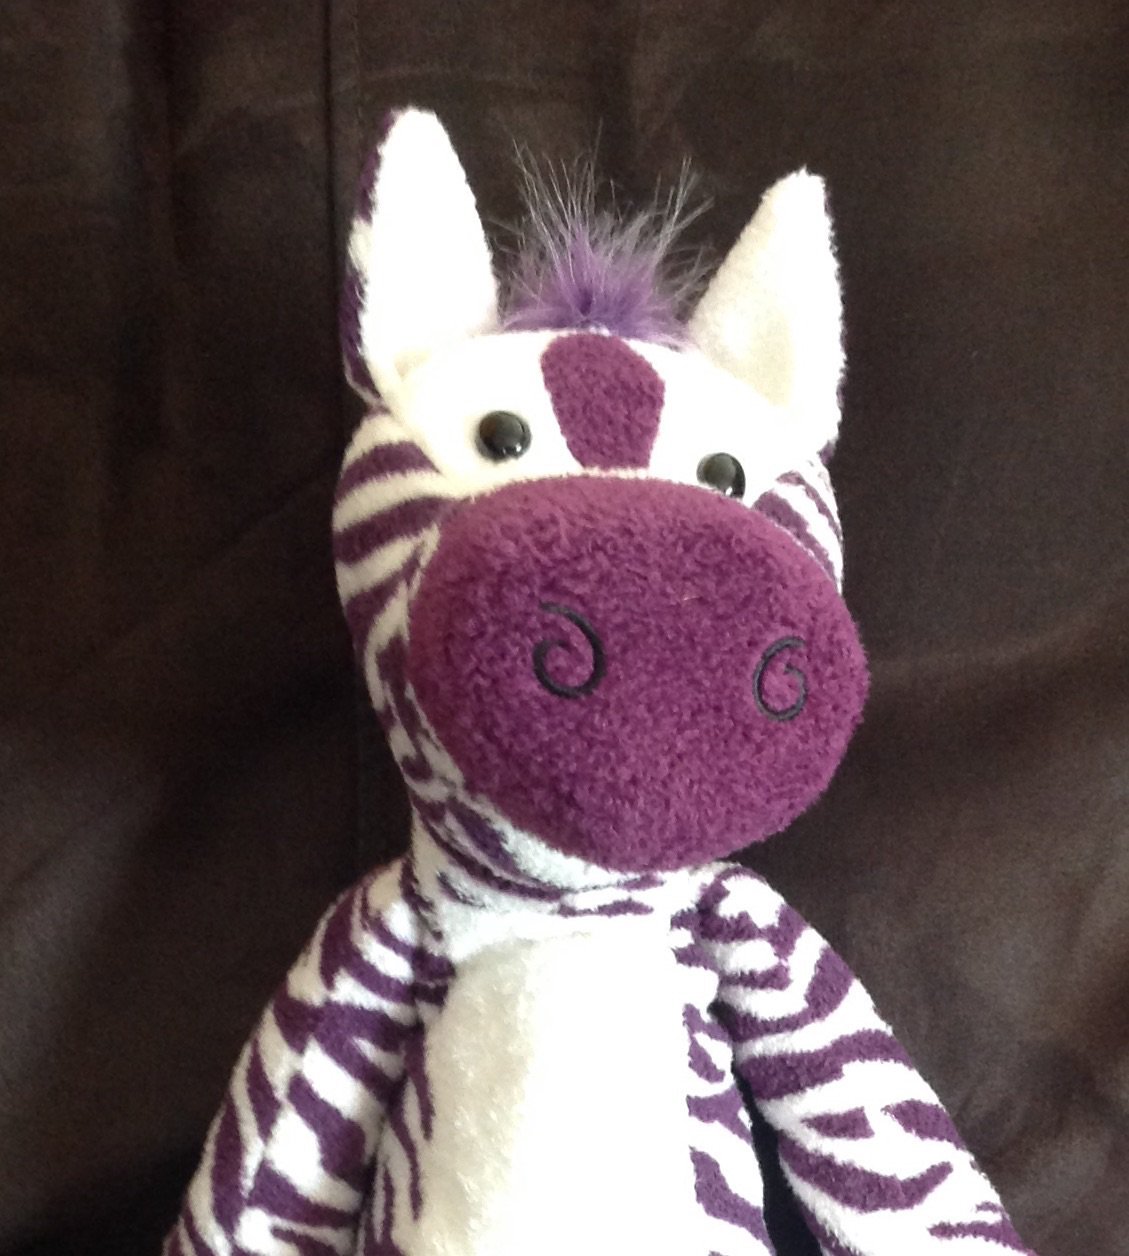 purple zebra stuffed animal